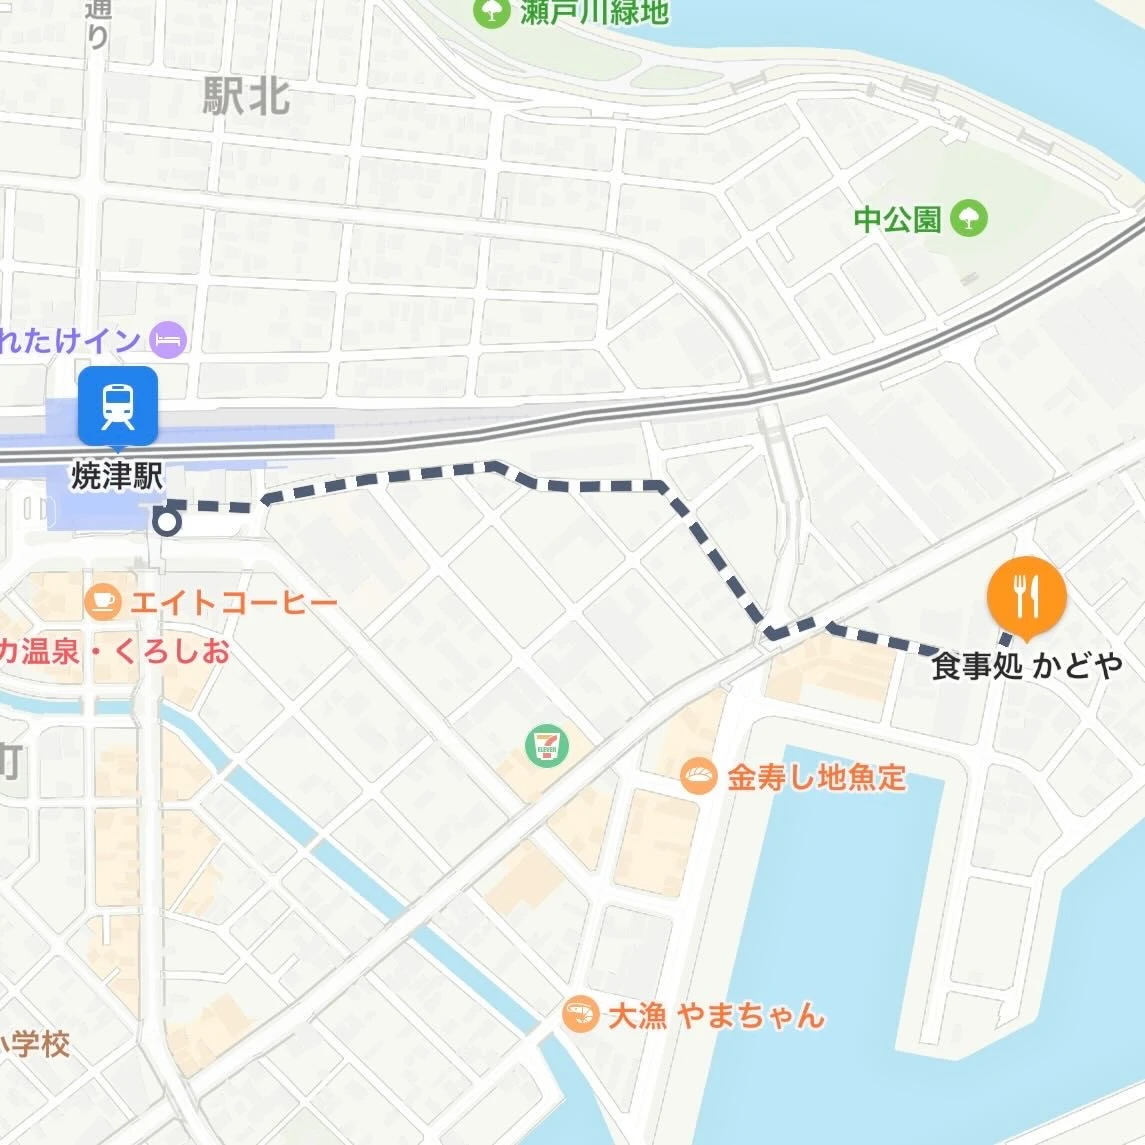 焼津駅から「食事処かどや」までの経路